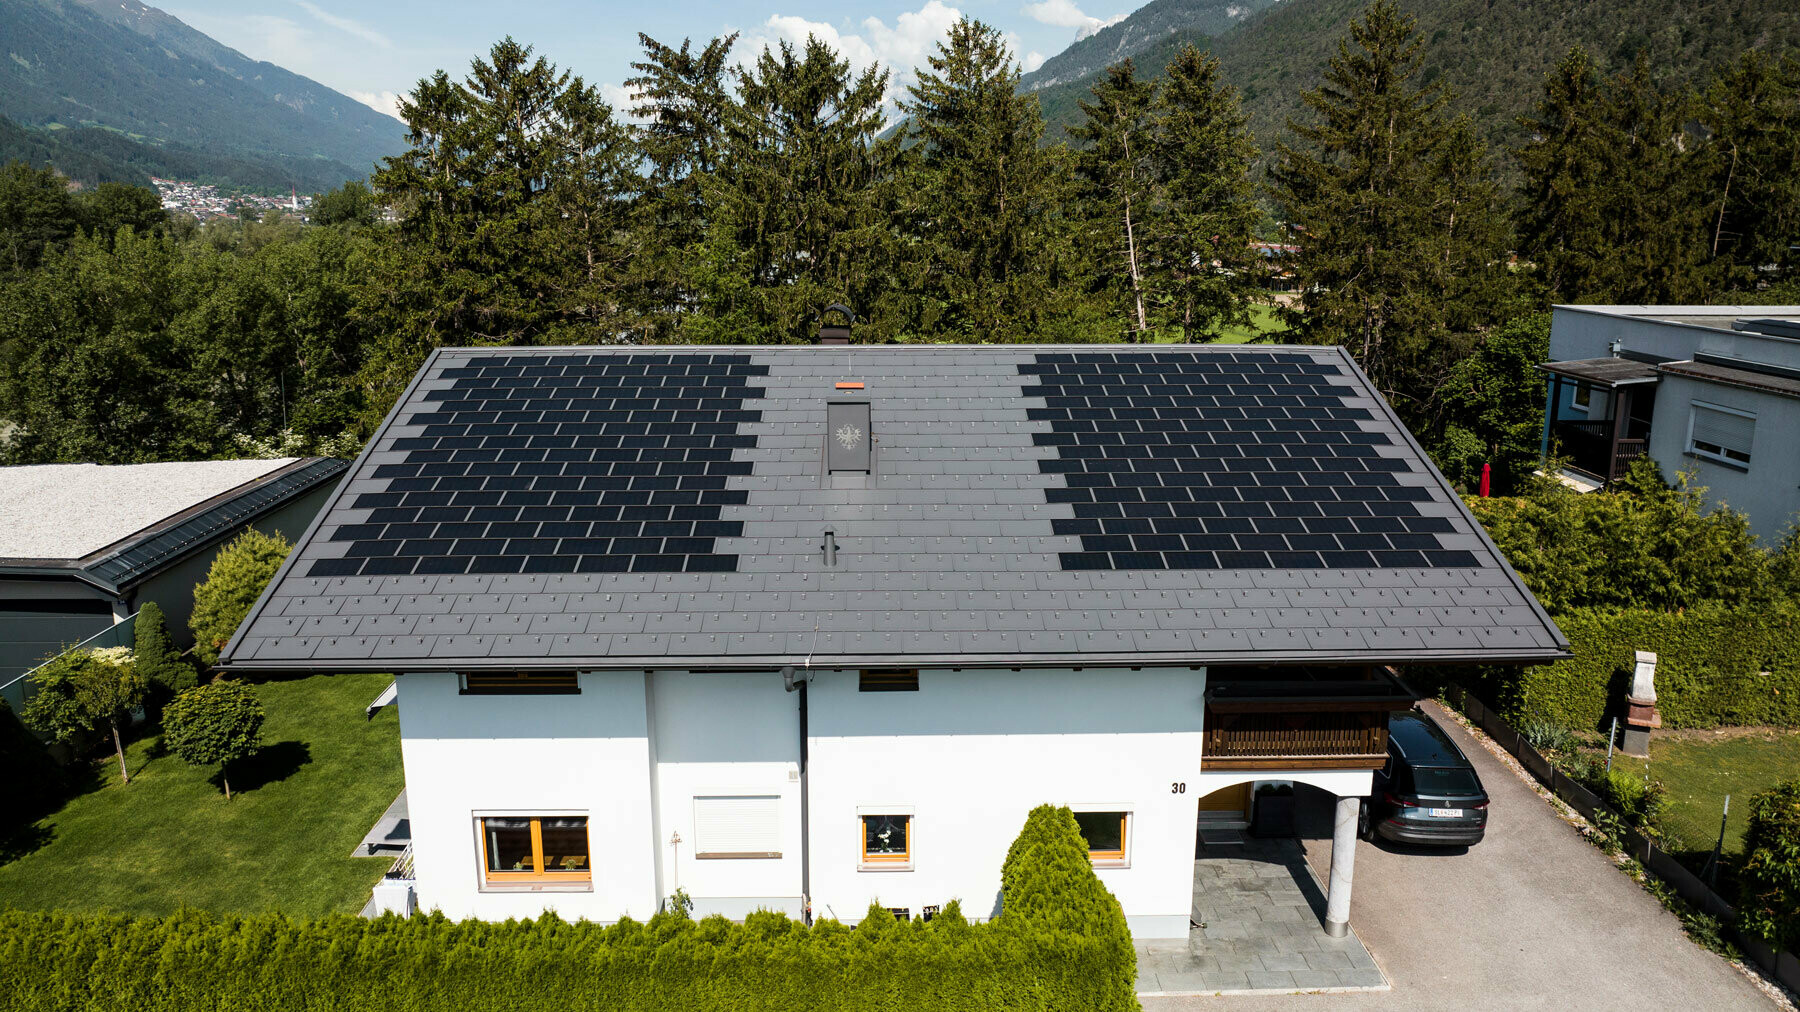 L'immagine mostra una casa unifamiliare coperta con la tegola fotovoltaica PREFA piccola e con la tegola R.16 nel colore P.10 grigio scuro in un ambiente rurale.